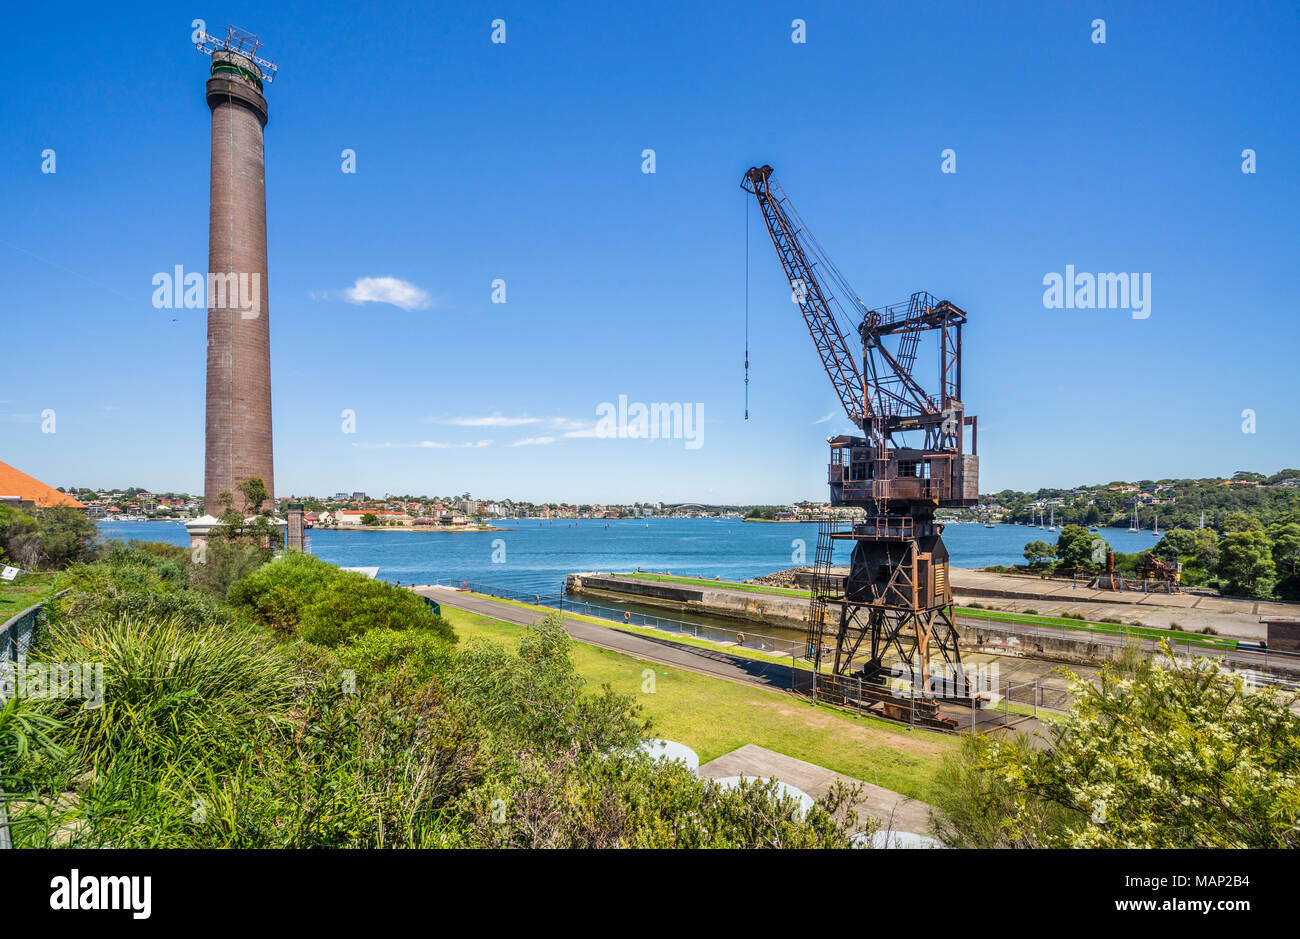 Grue de chantier naval à la cale de l'île de Cockatoo shipyard site du patrimoine mondial dans le contexte de la fumée powerhouse jeu, le port de Sydney, Nouvelle-Galles du Sud Banque D'Images